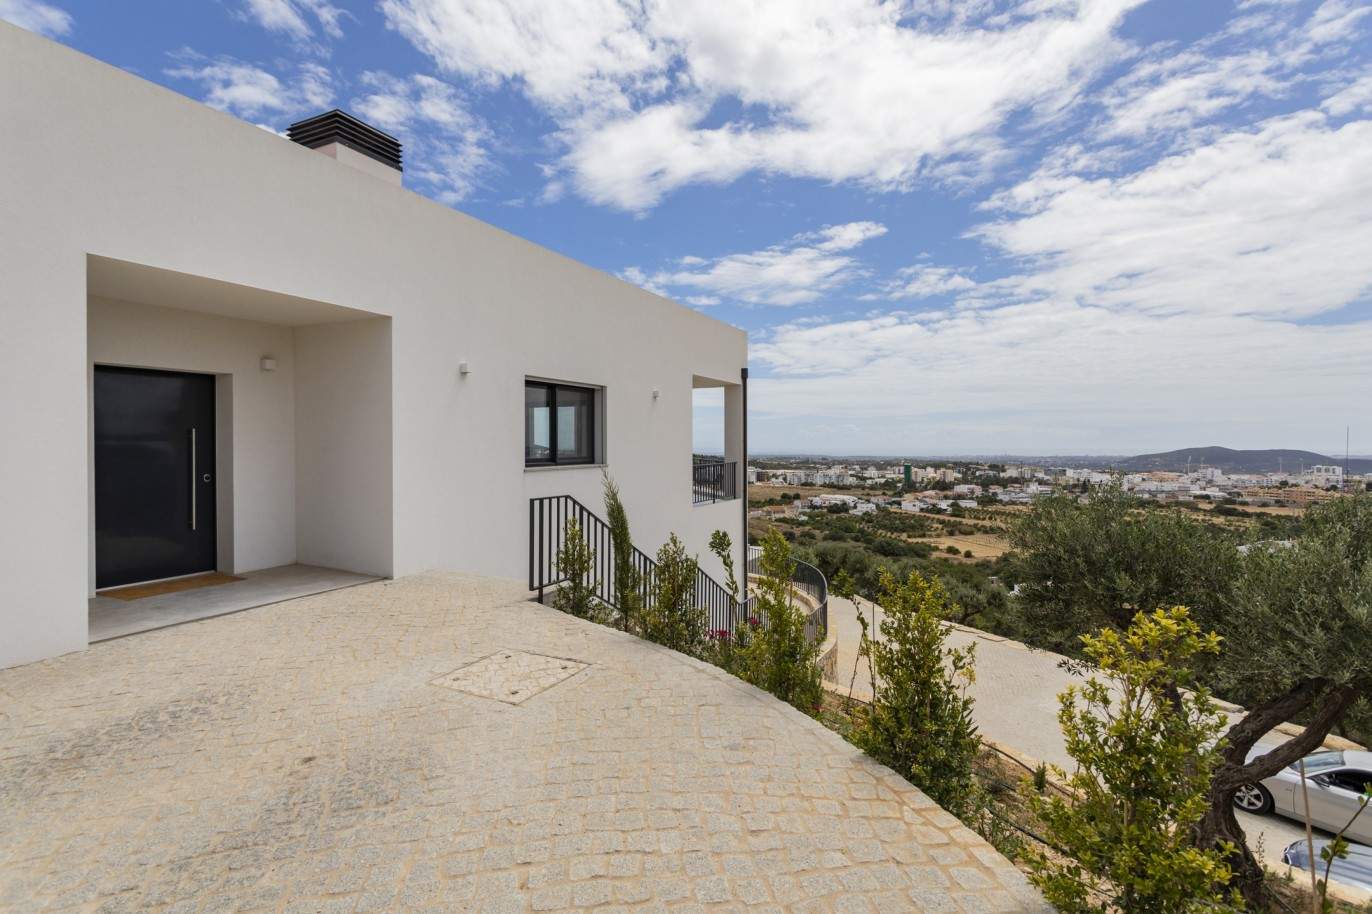 Villa de 4 dormitorios con piscina, en venta en S.Clemente, Loulé, Algarve_201789